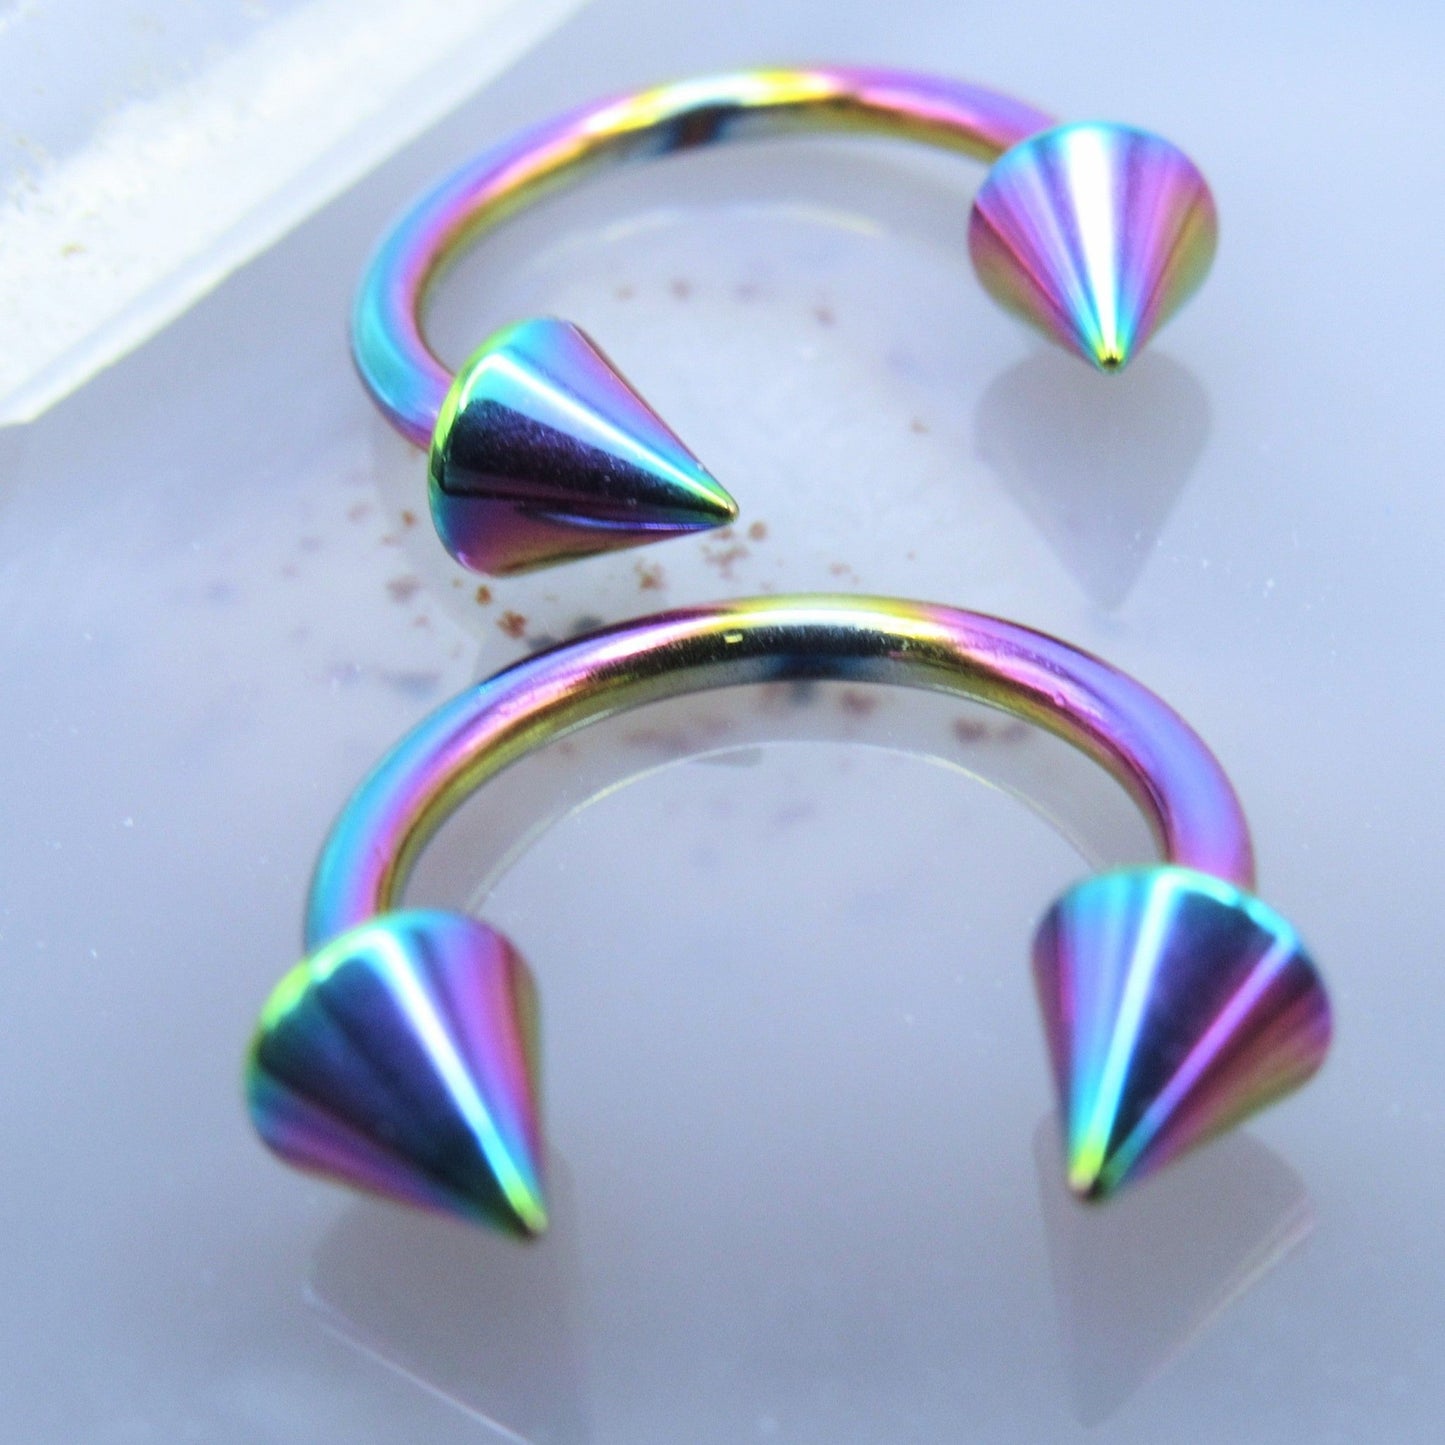 Spike horseshoe earring set 14g 1/2" rainbow lip earlobe piercing body jewelry hoops - Siren Body Jewelry